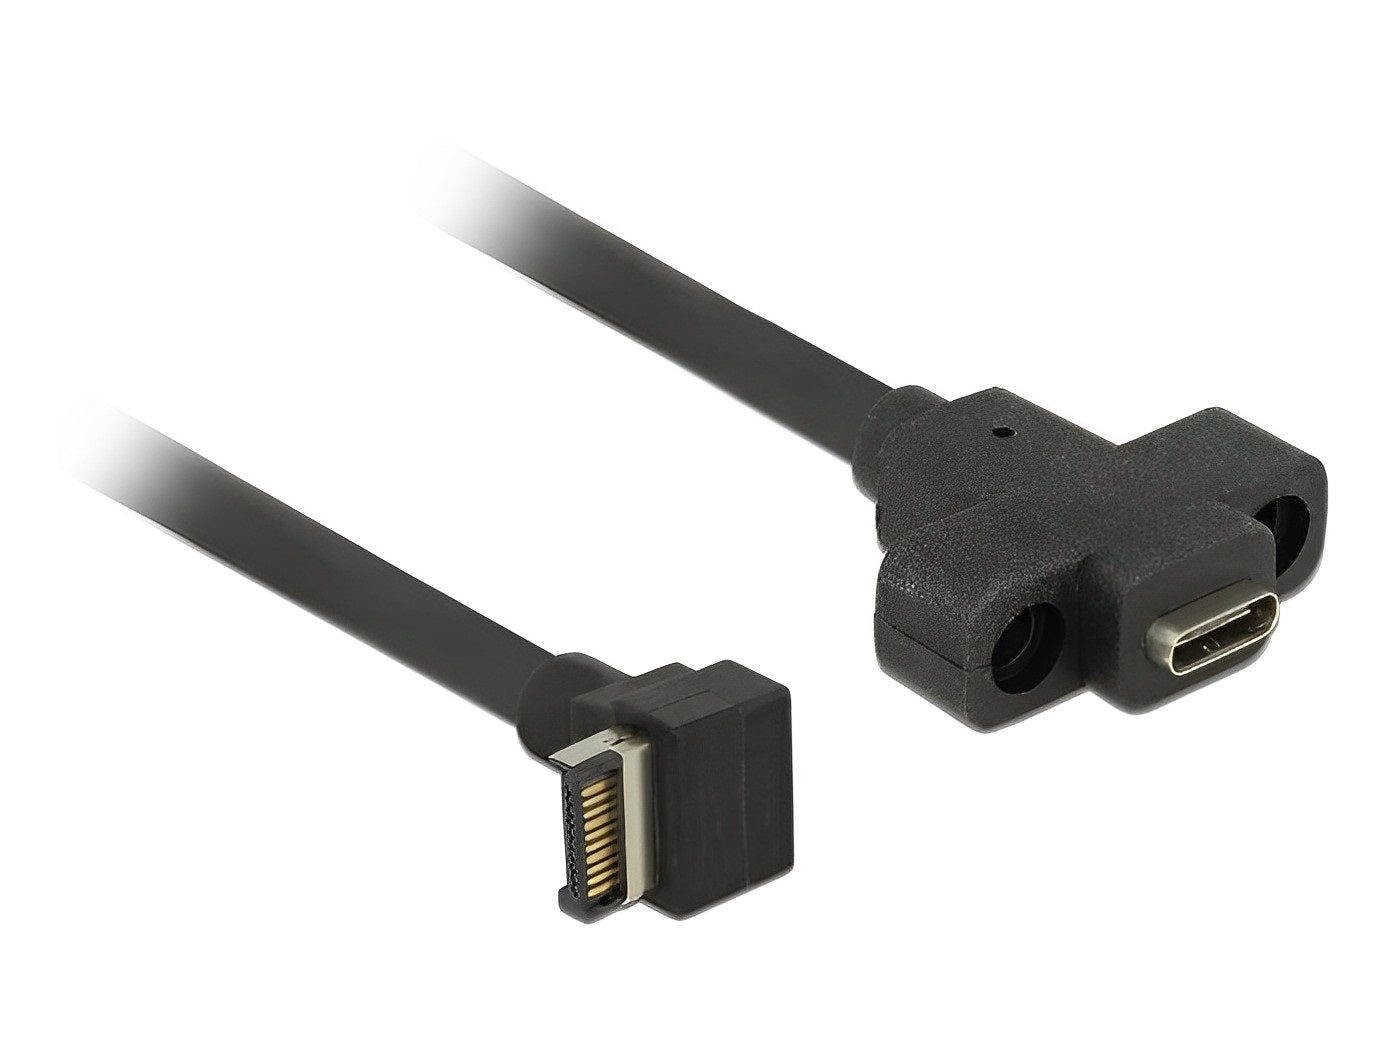 כבל USB-C 3.1 Gen 2 לפאנל תקע 20 פין לשקע USB-C עם מרחק בין הברגים 20 מ"מ  - delock.israel